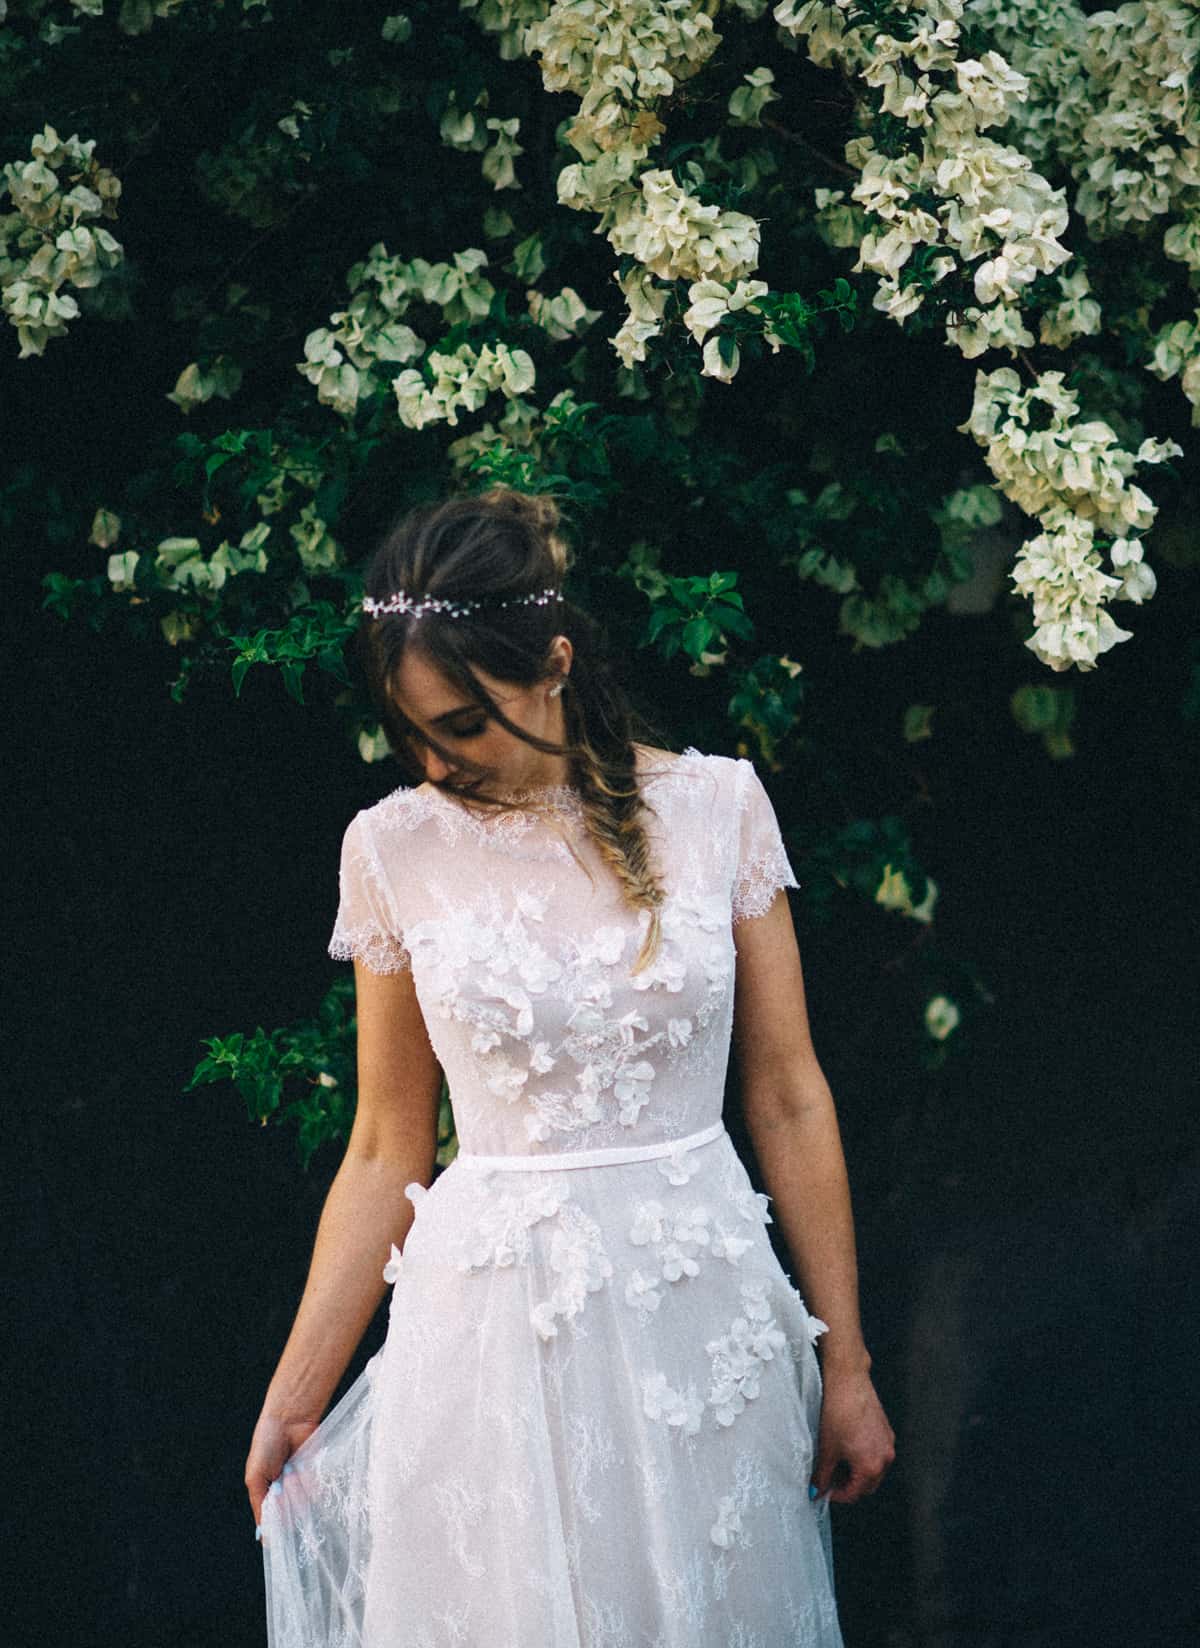 Best wedding dresses 2016 - floral applique gown